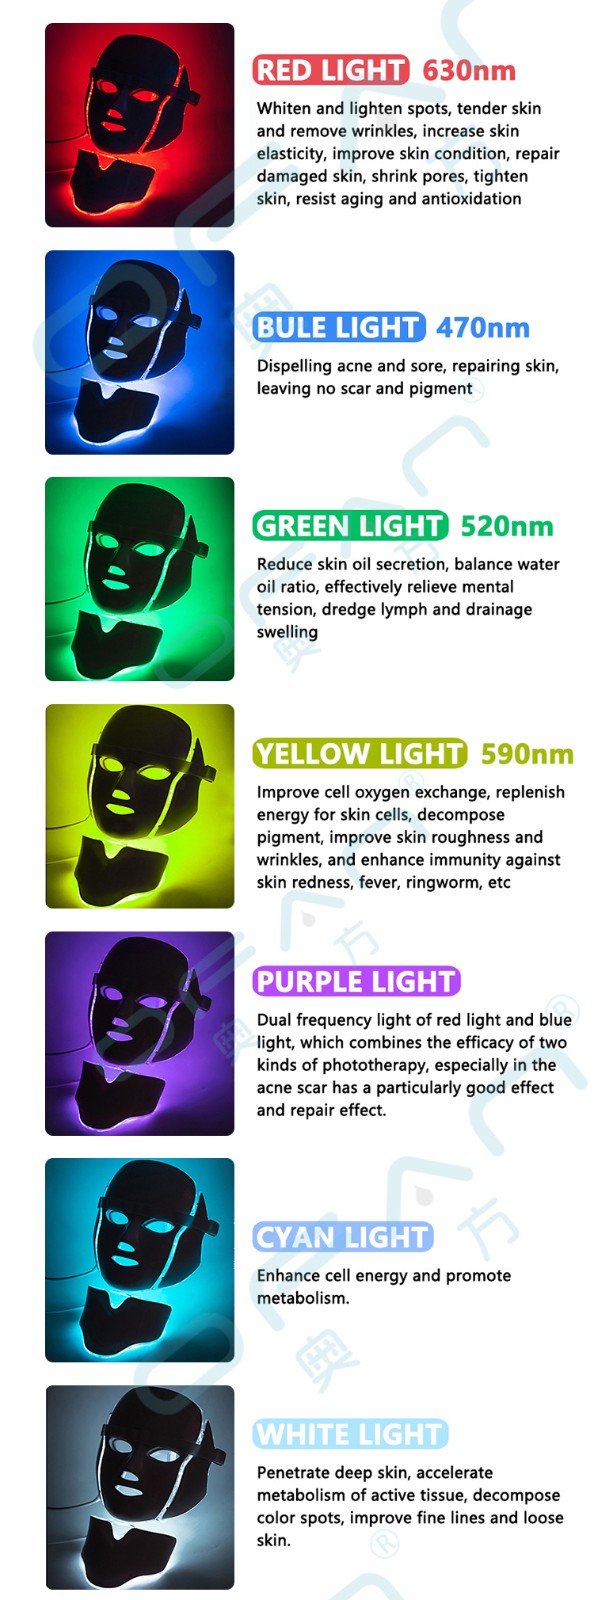 Masque facial anti-âge à usage domestique, 7 couleurs, LED PDT, élimination des rides, masque de beauté photonique